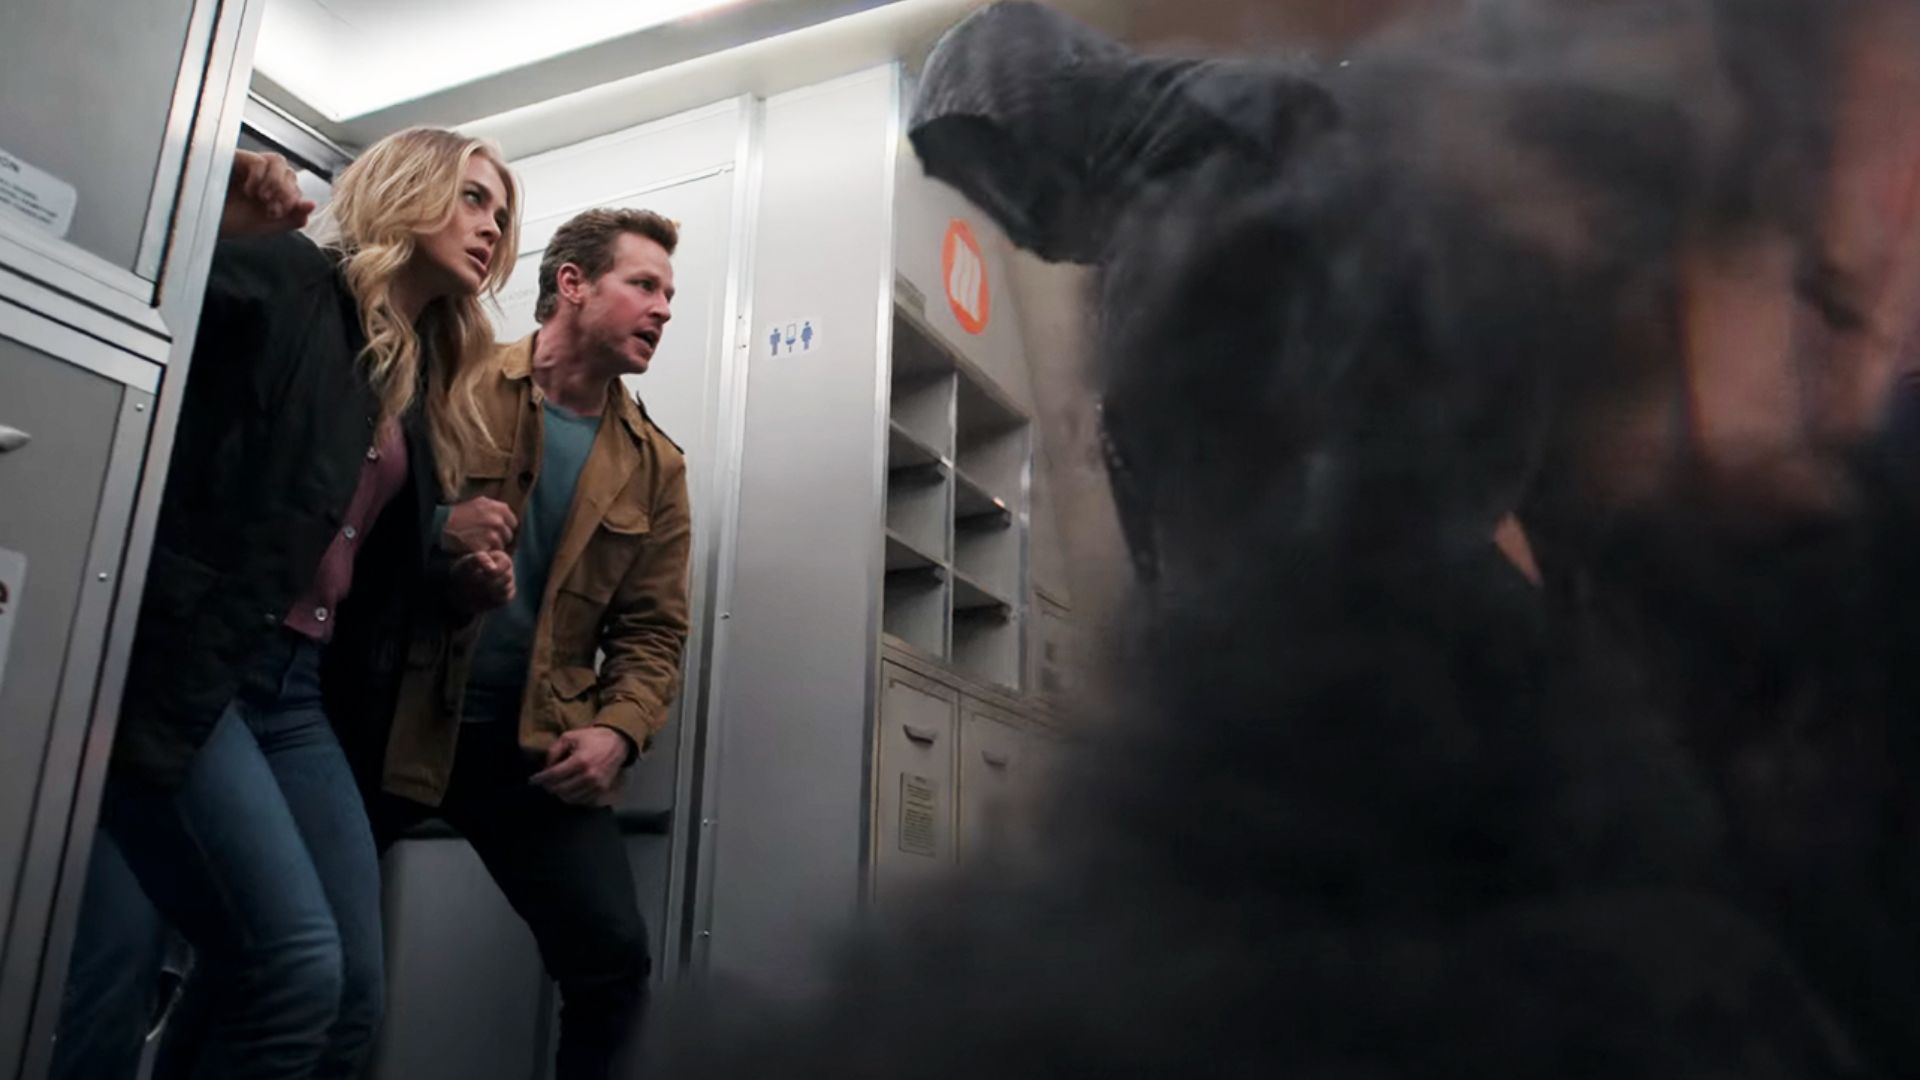 Passageiros do voo 828 lutam contra a morte no último episódio de "Manifest" (Foto: Reprodução/Netflix)